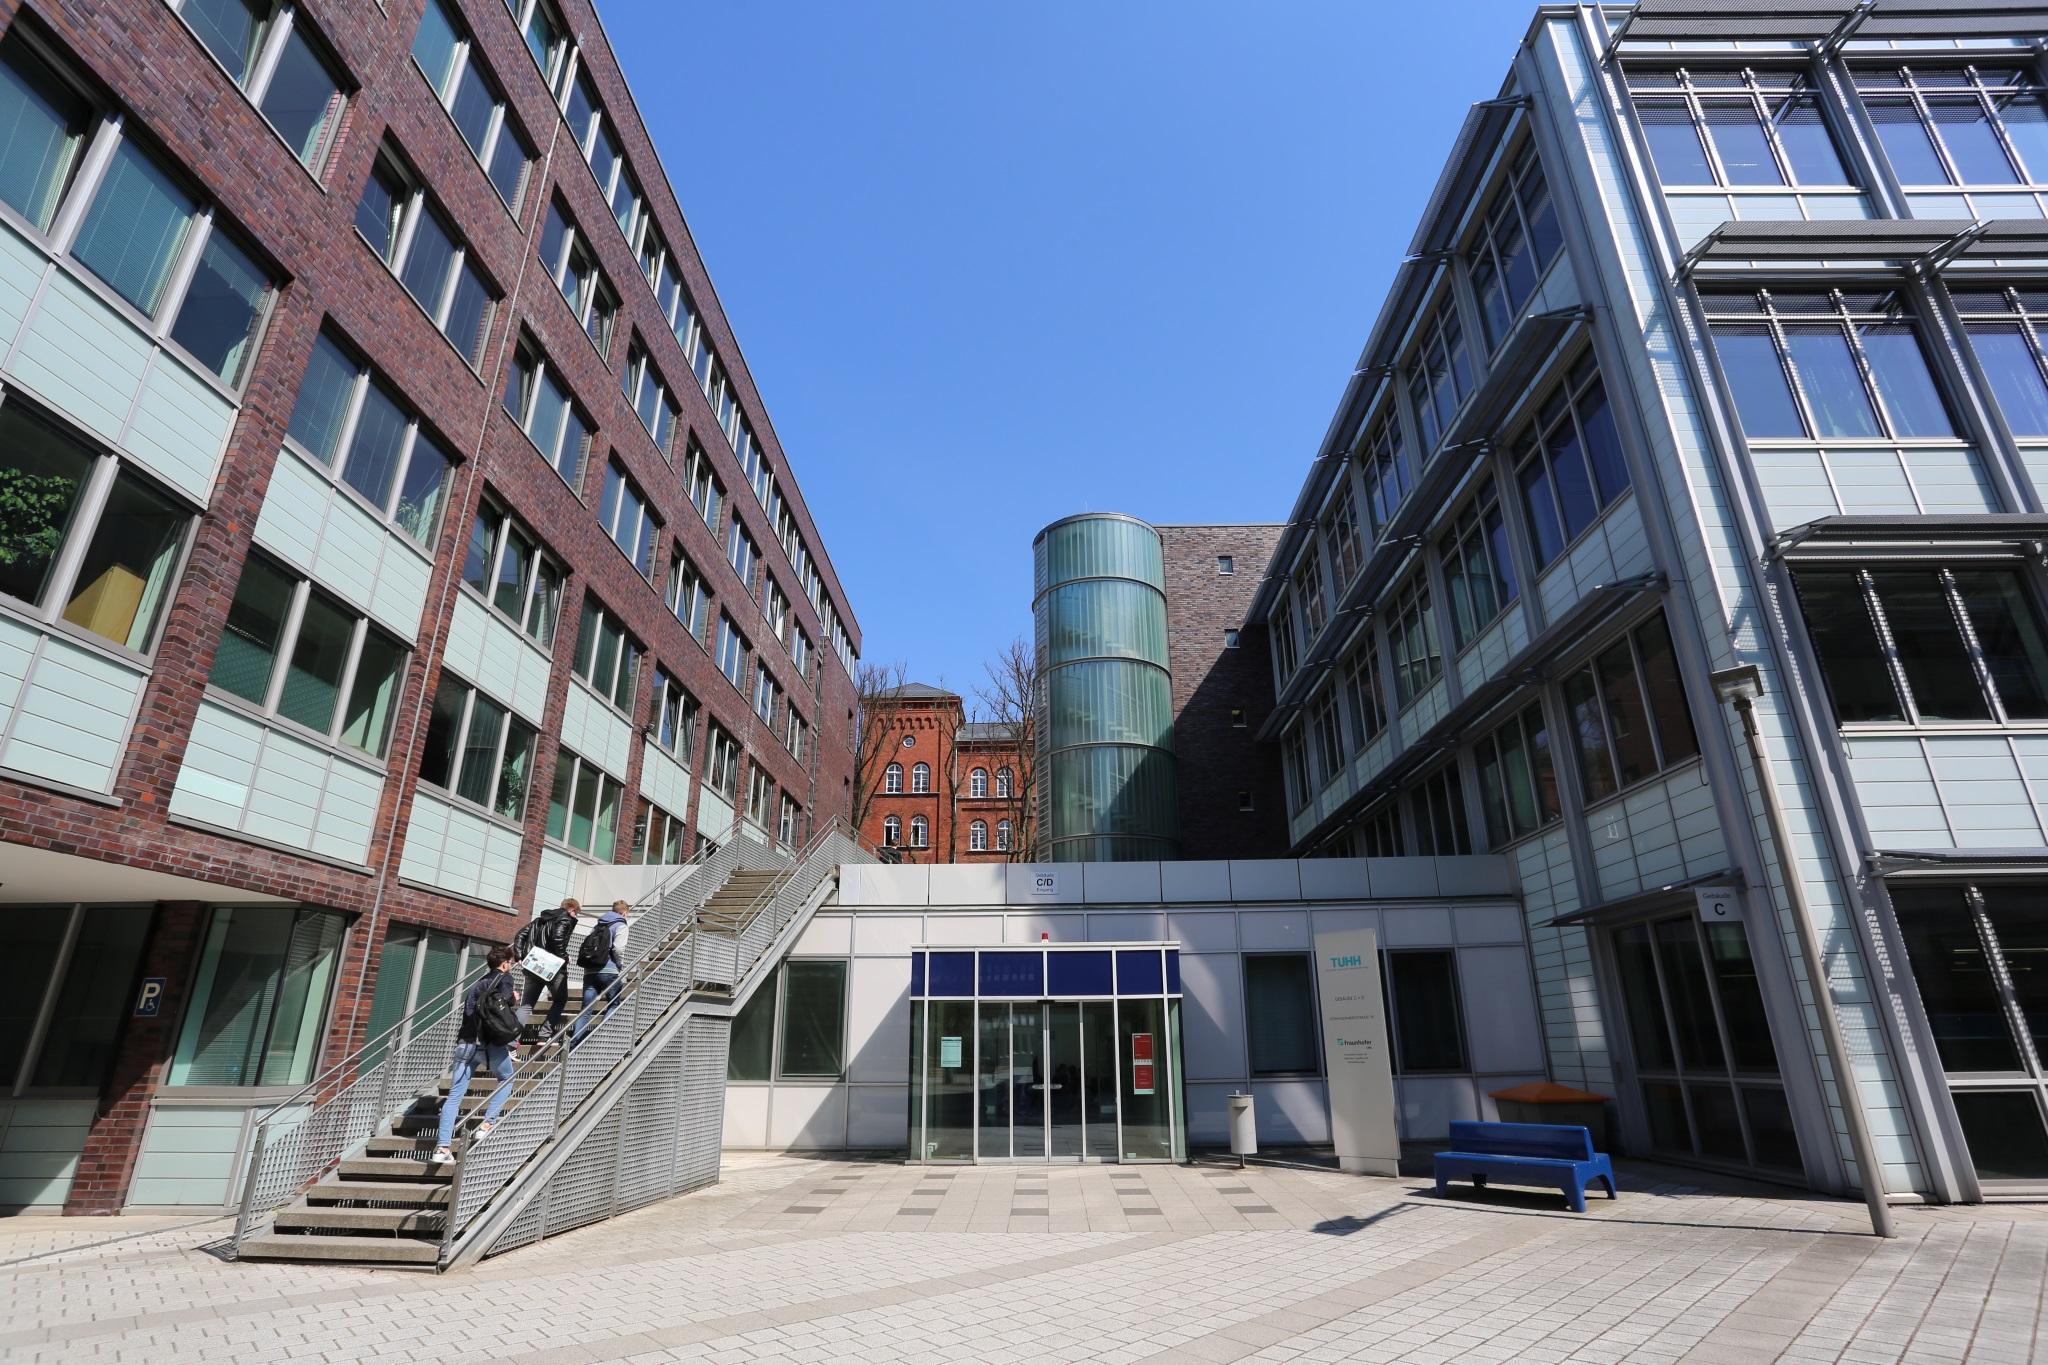 Αμβούργο - Τεχνικό Πανεπιστήμιο του Αμβούργουaf5